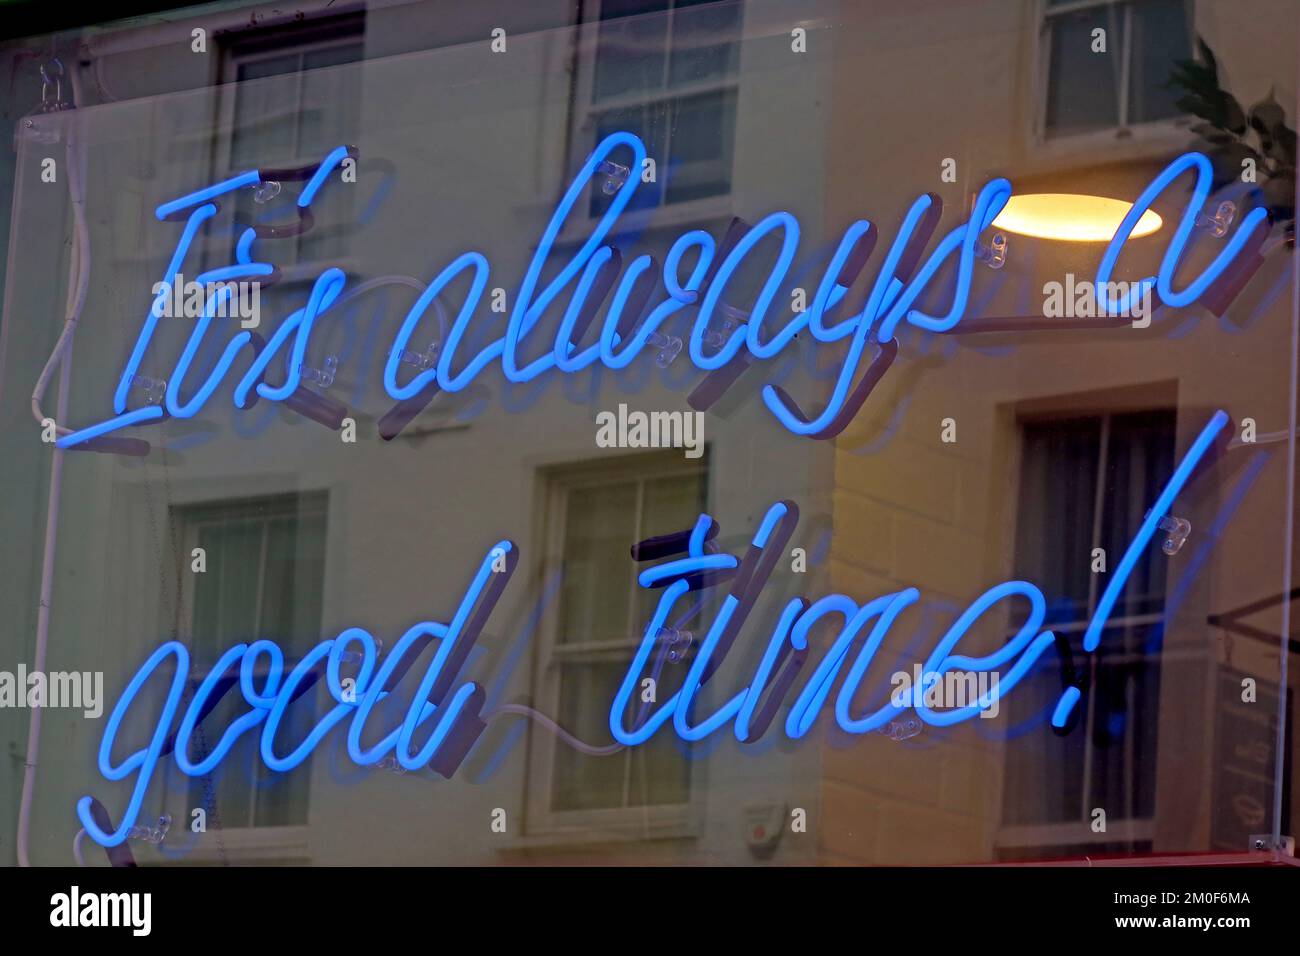 C'est toujours un bon moment, signe de néon bleu, Londres, Angleterre, Royaume-Uni Banque D'Images